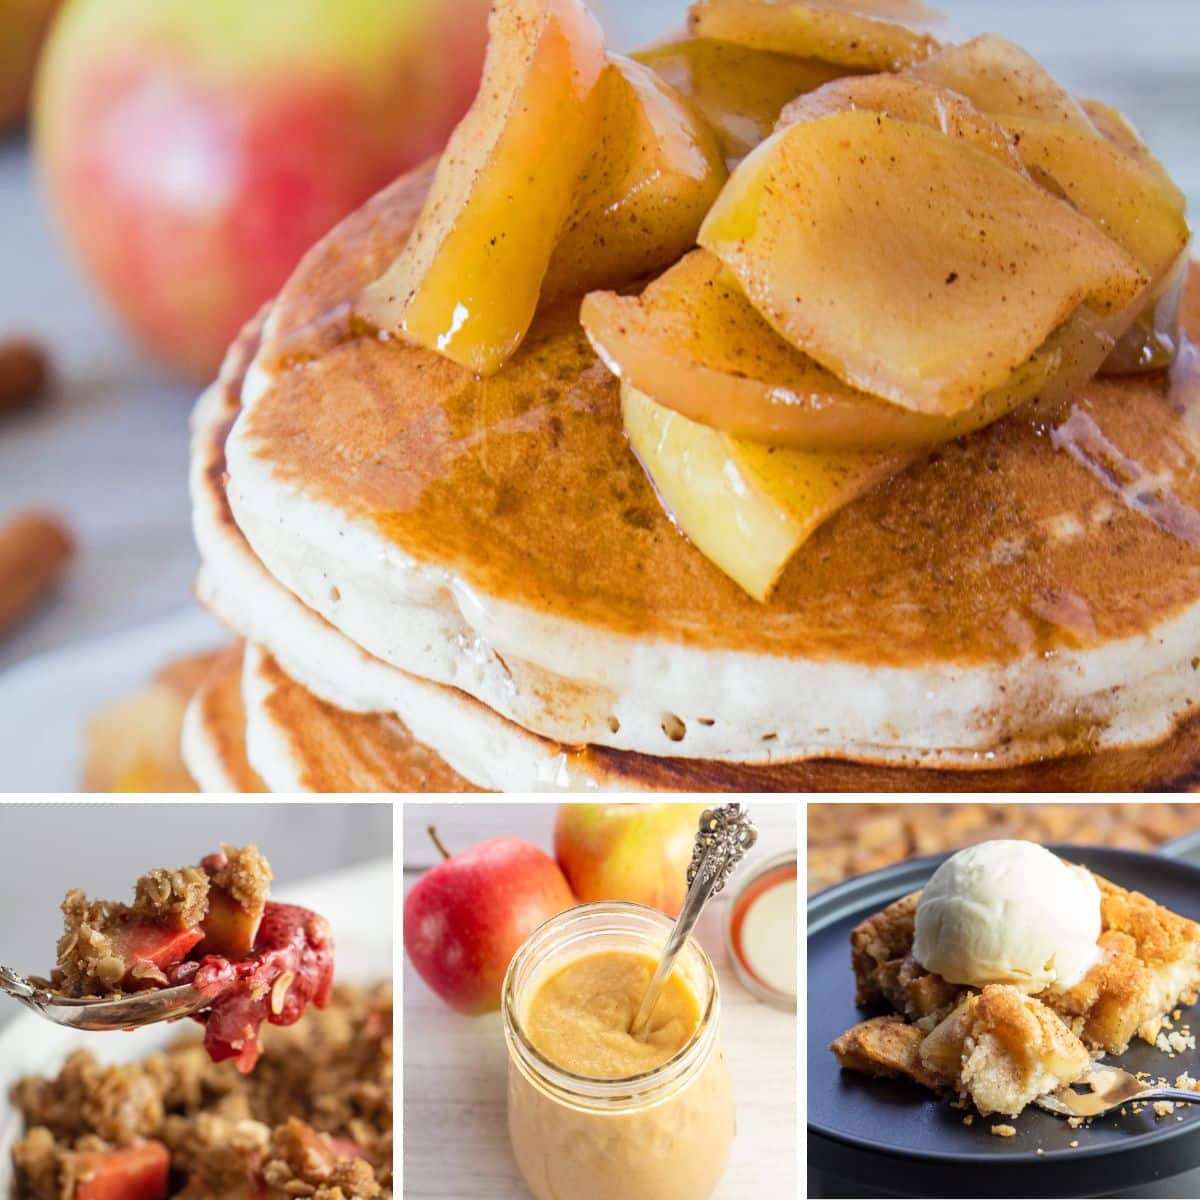 Le migliori ricette di mele da preparare e gustare in qualsiasi giorno della settimana con 4 ricette in un'immagine collage.